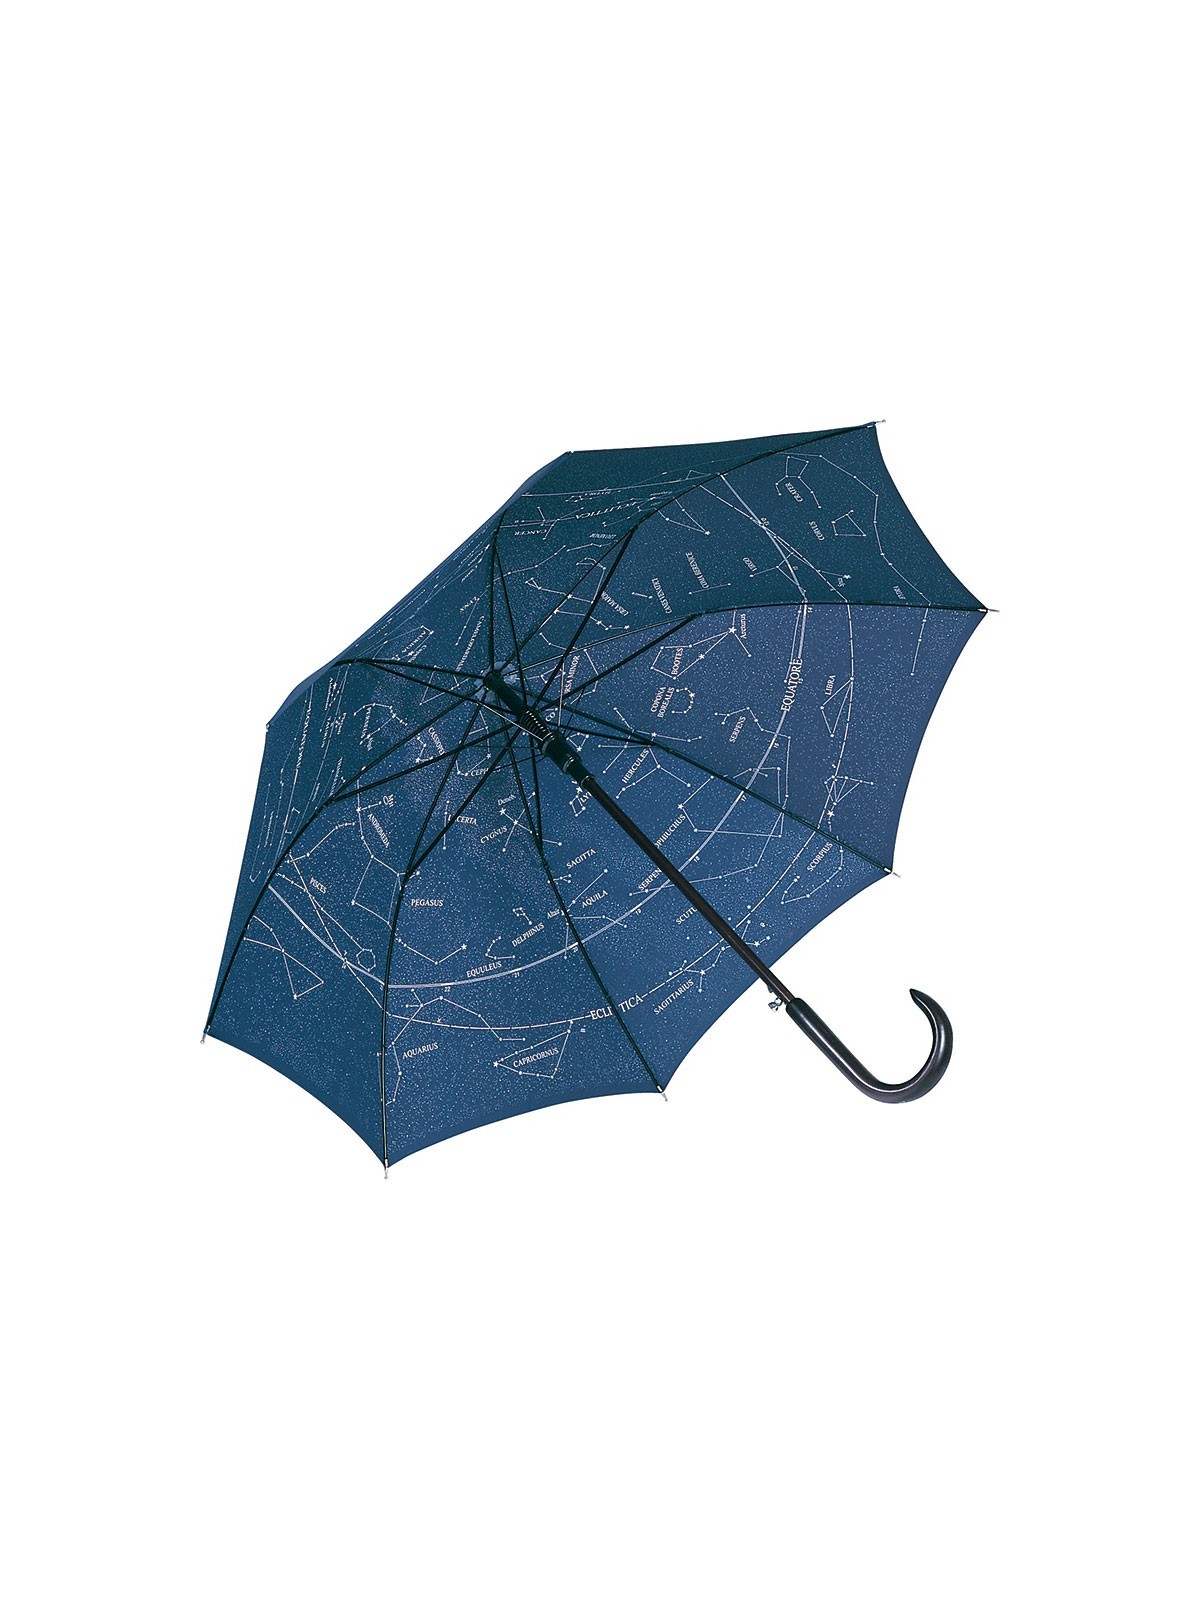 75-027 Parapluie publicitaire constellations personnalisé